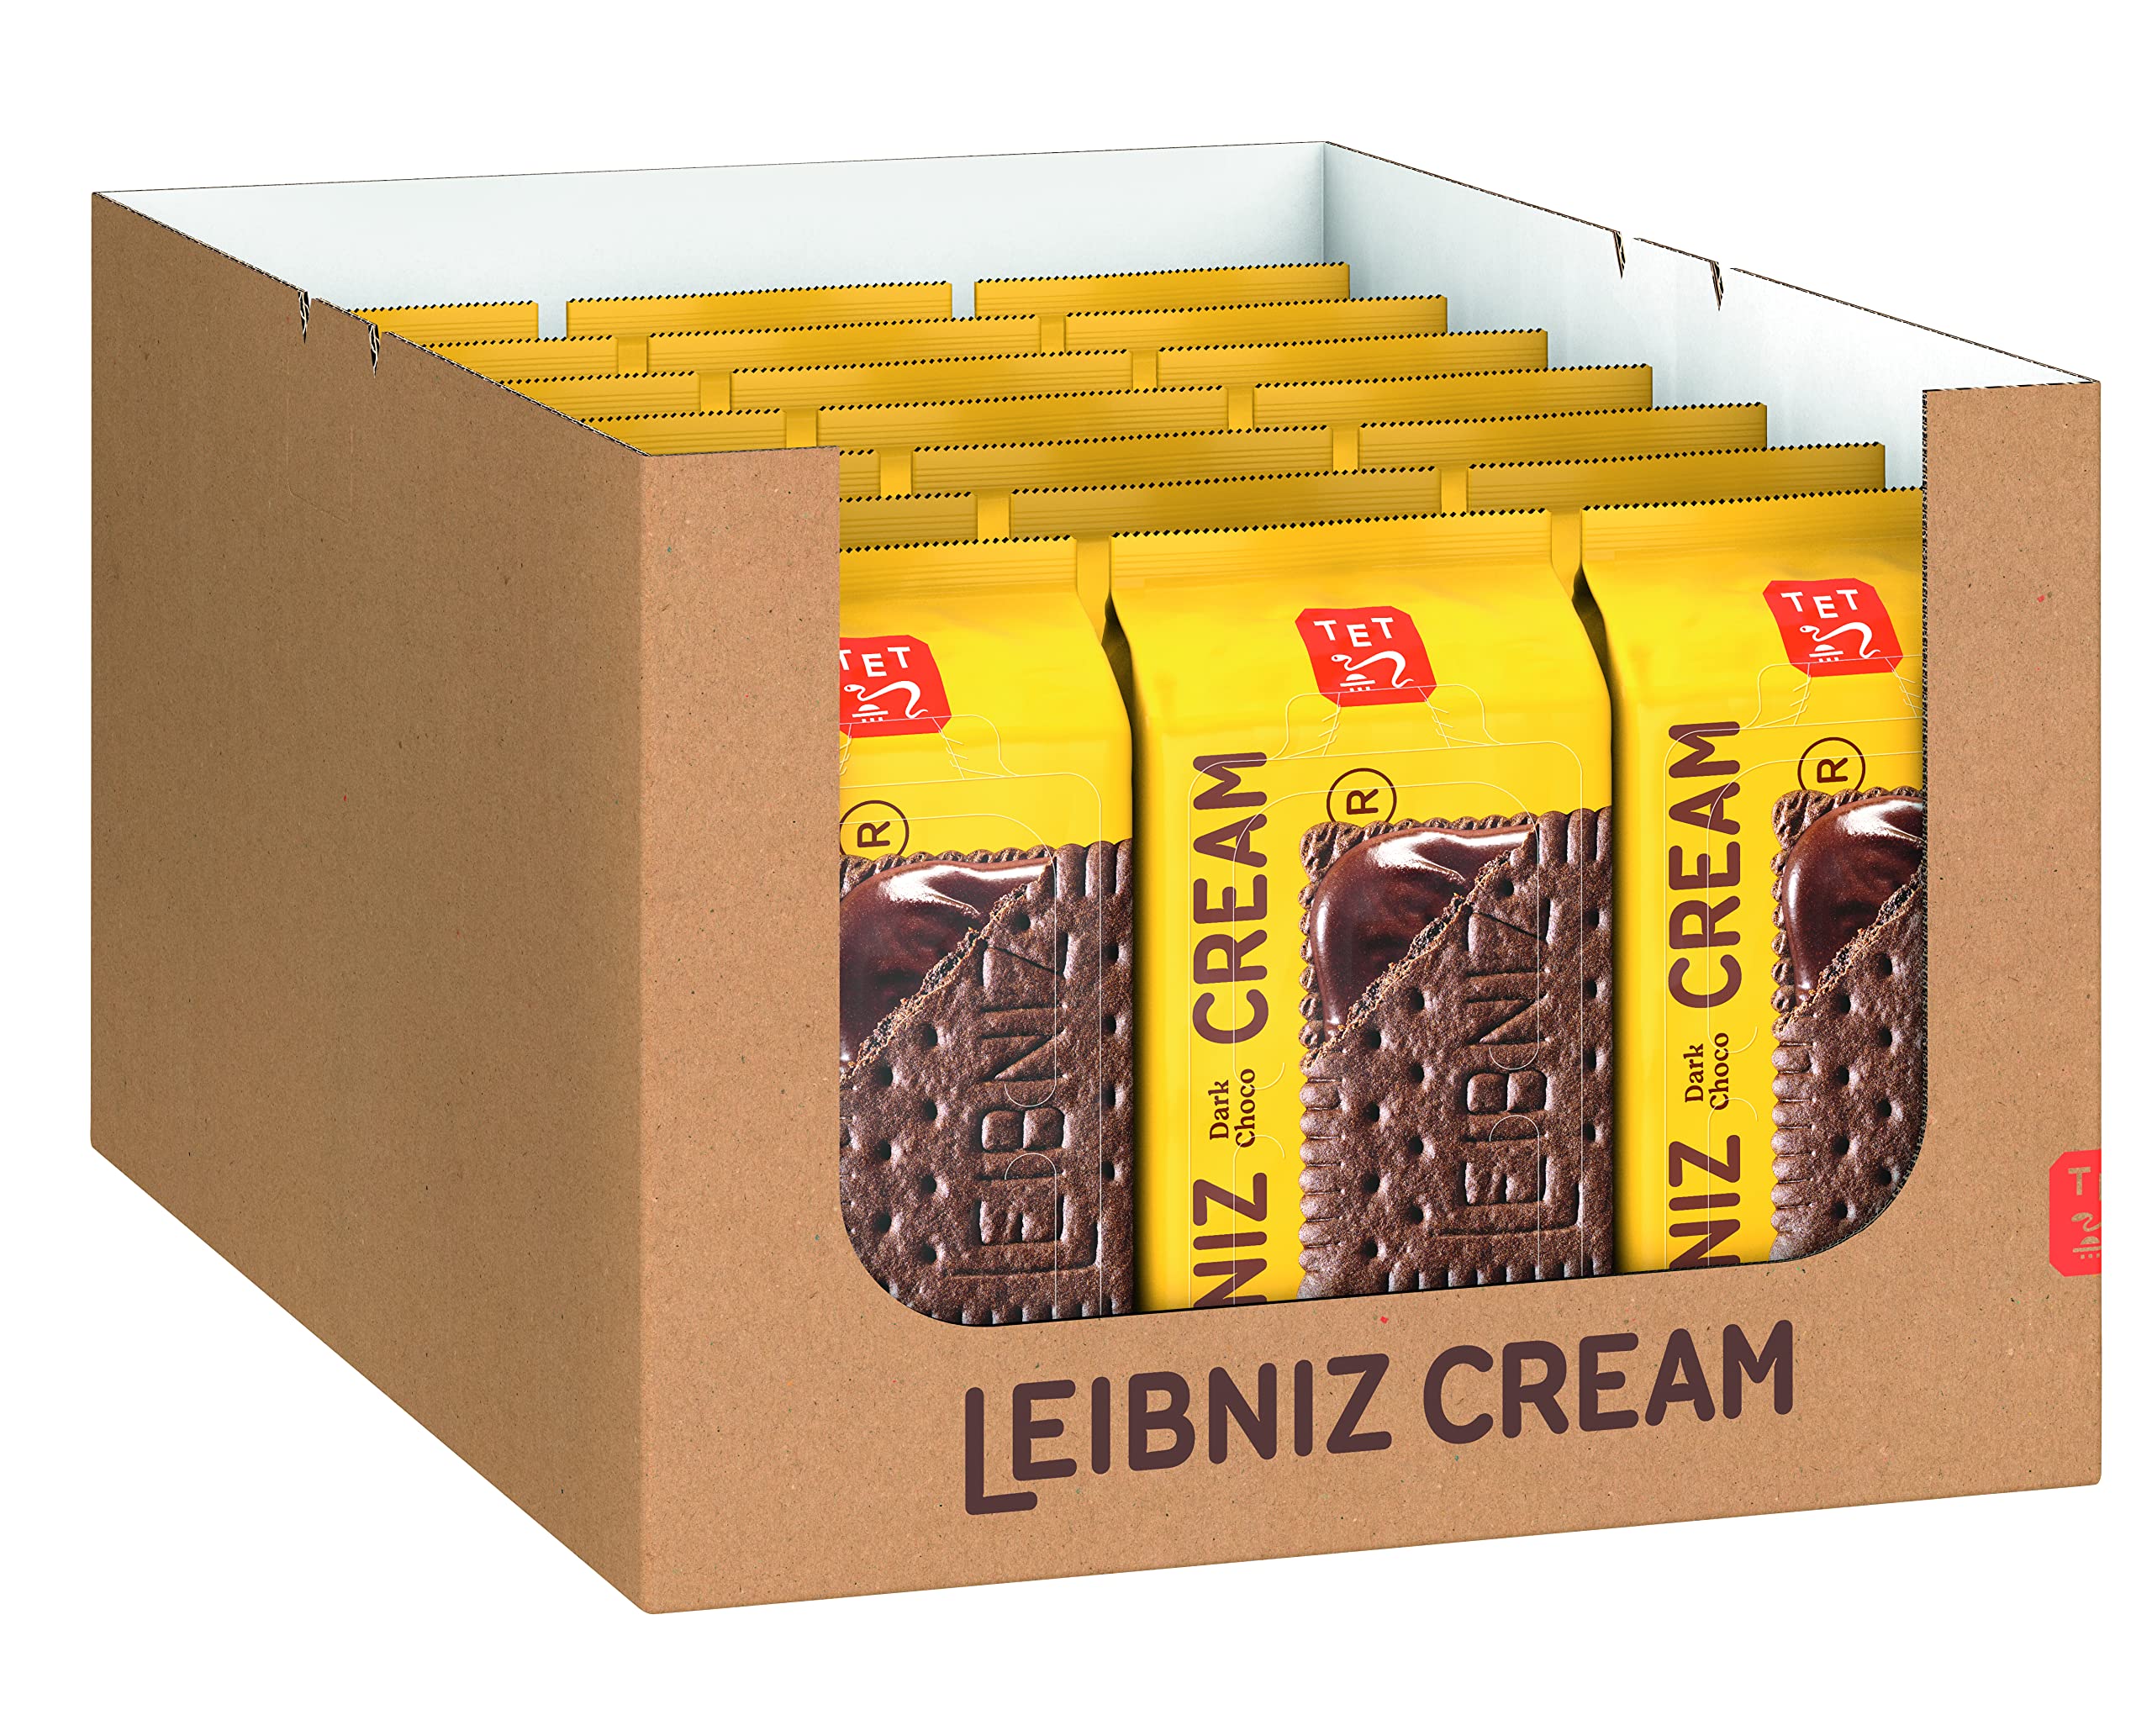 LEIBNIZ Cream Dark Choco - 21er Pack - 2 Kakaokekse mit Schoko-Cremefüllung (21 x 190g)